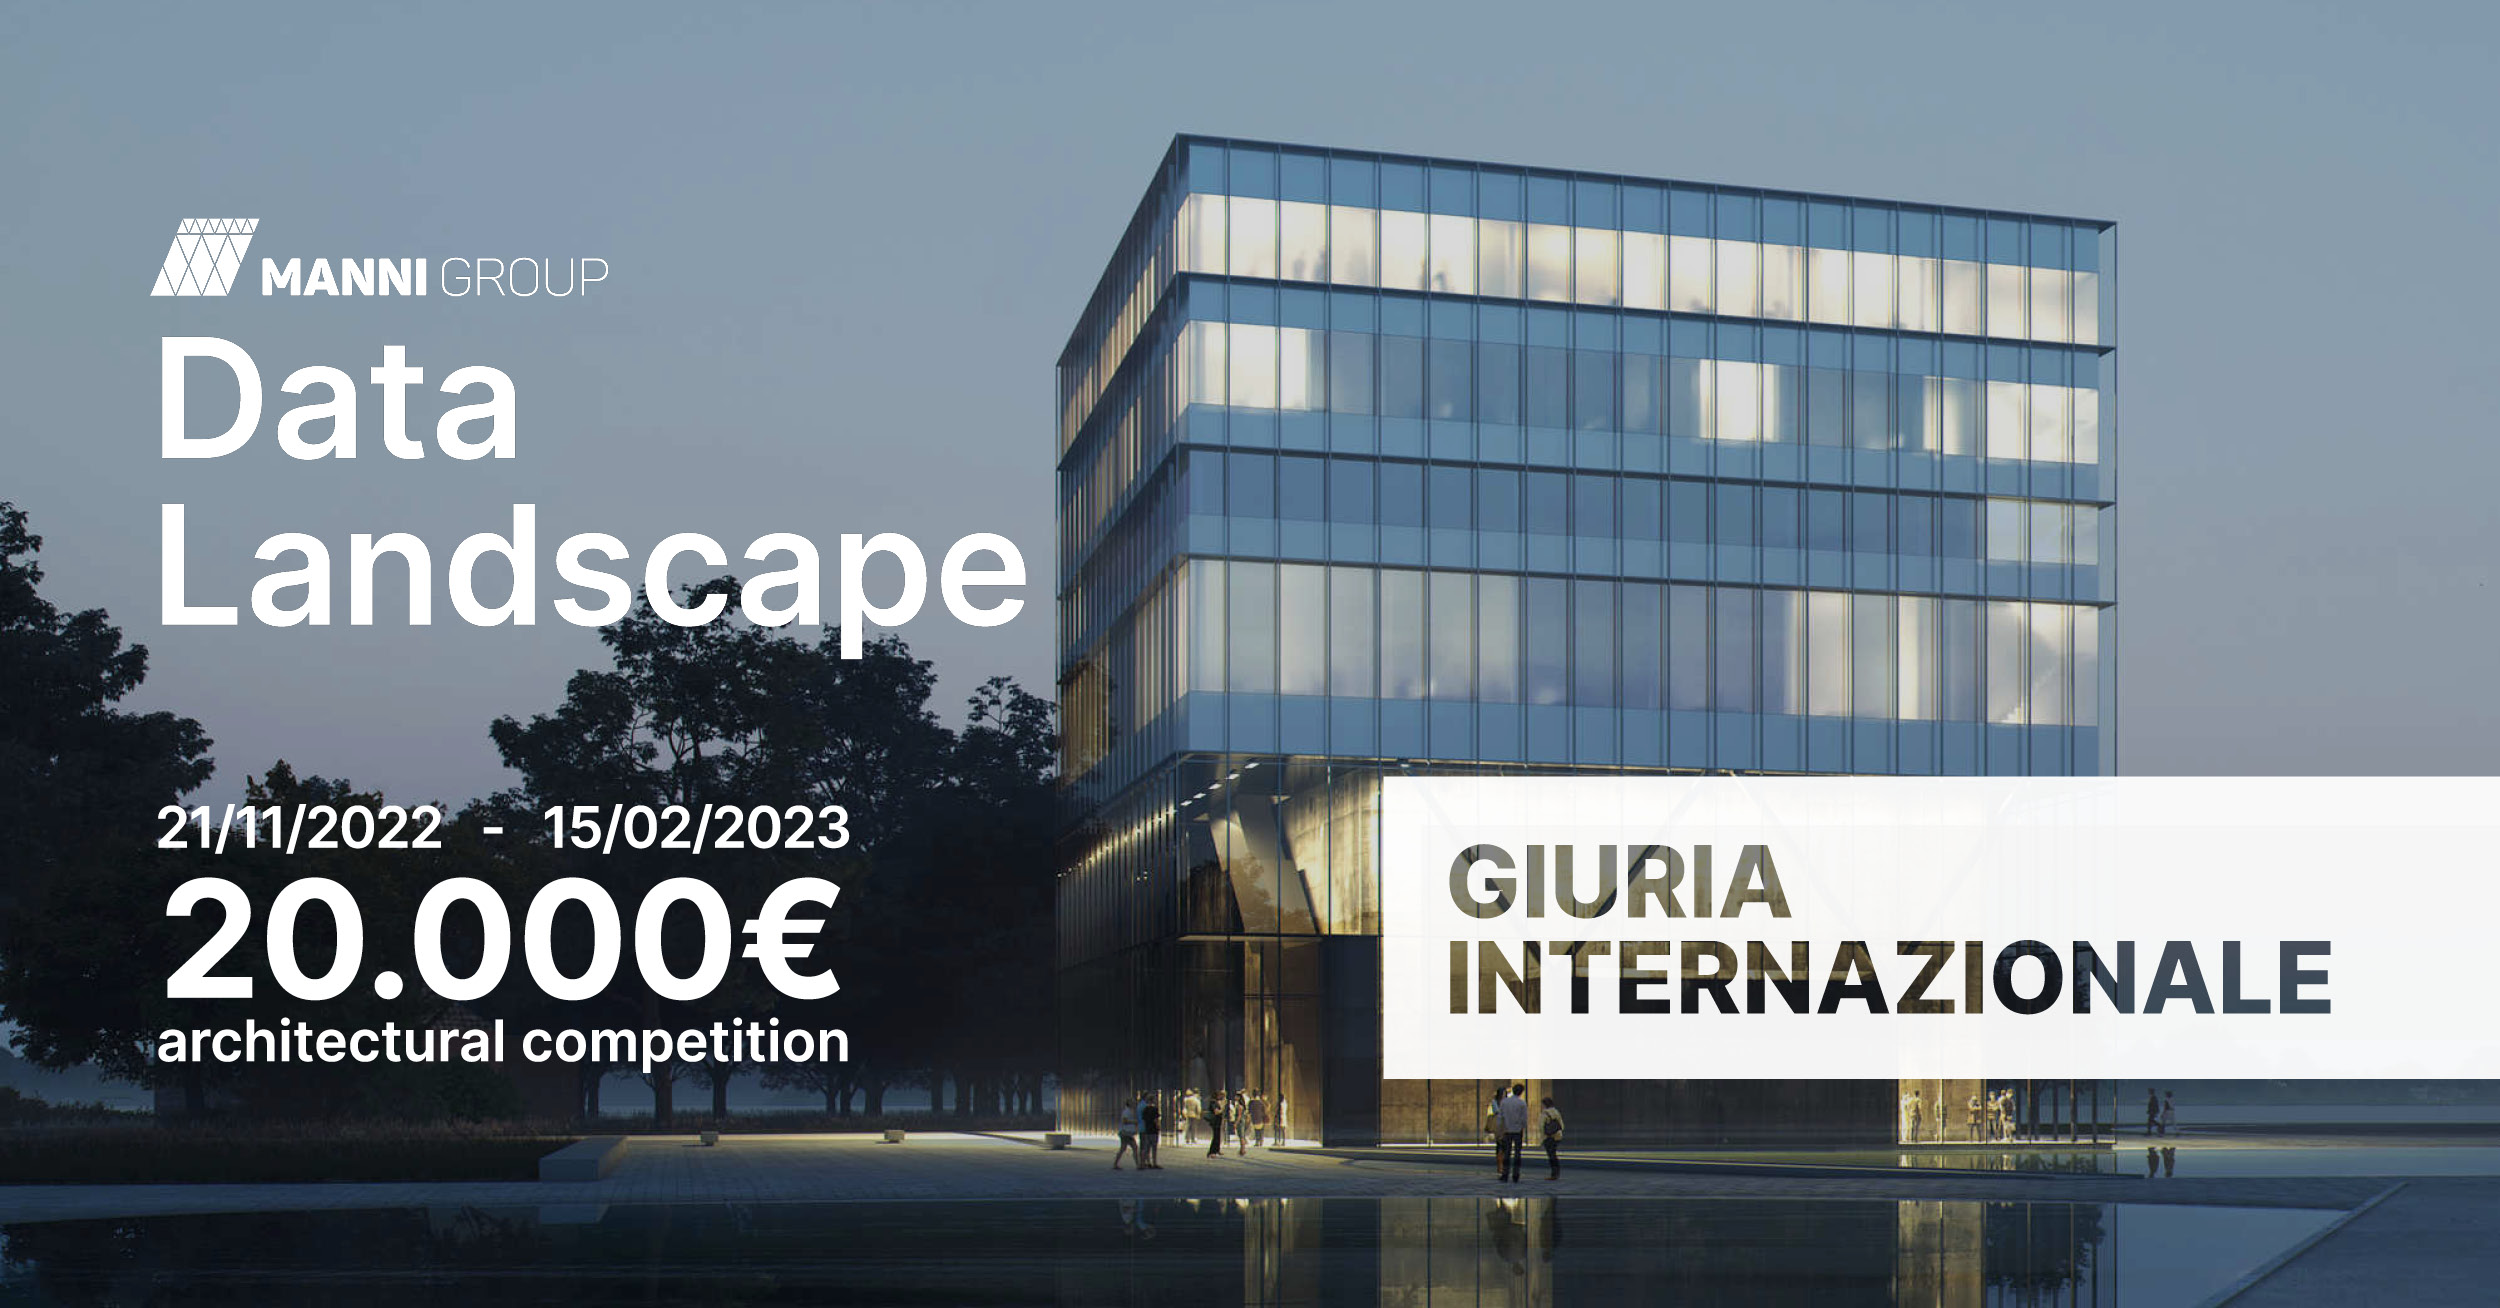 BIG, Mecanoo et Snøhetta font partie du jury de Data Landscape, le concours d'architecture visant à créer un centre de données